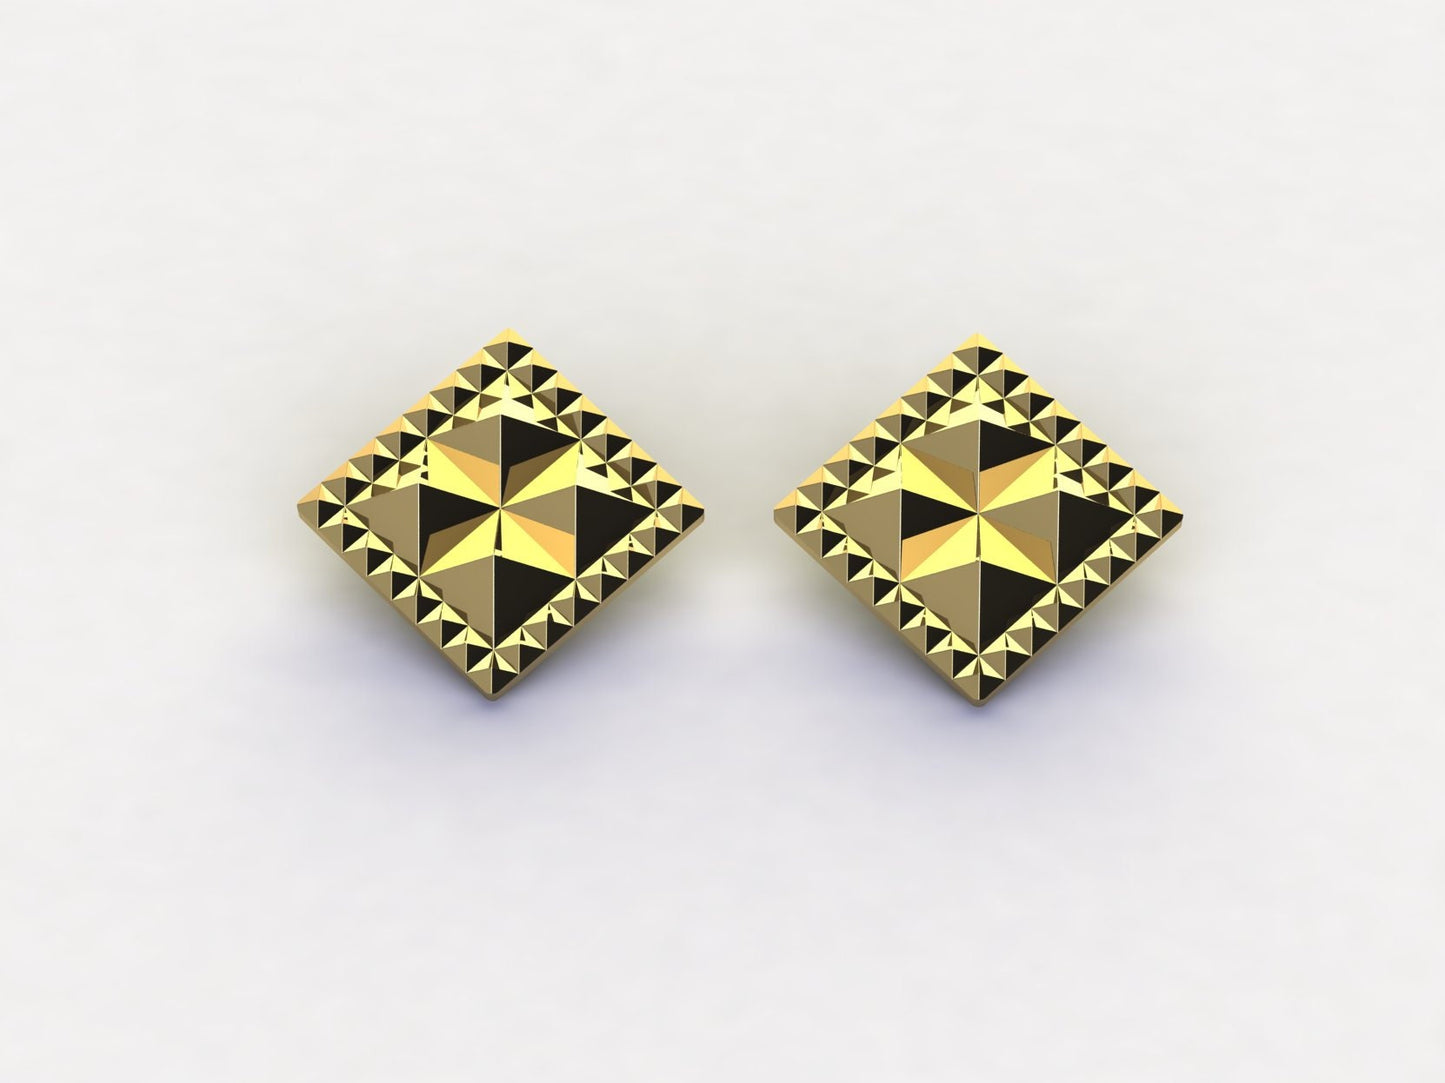 Studded 24k Gold Earrings, 15mm